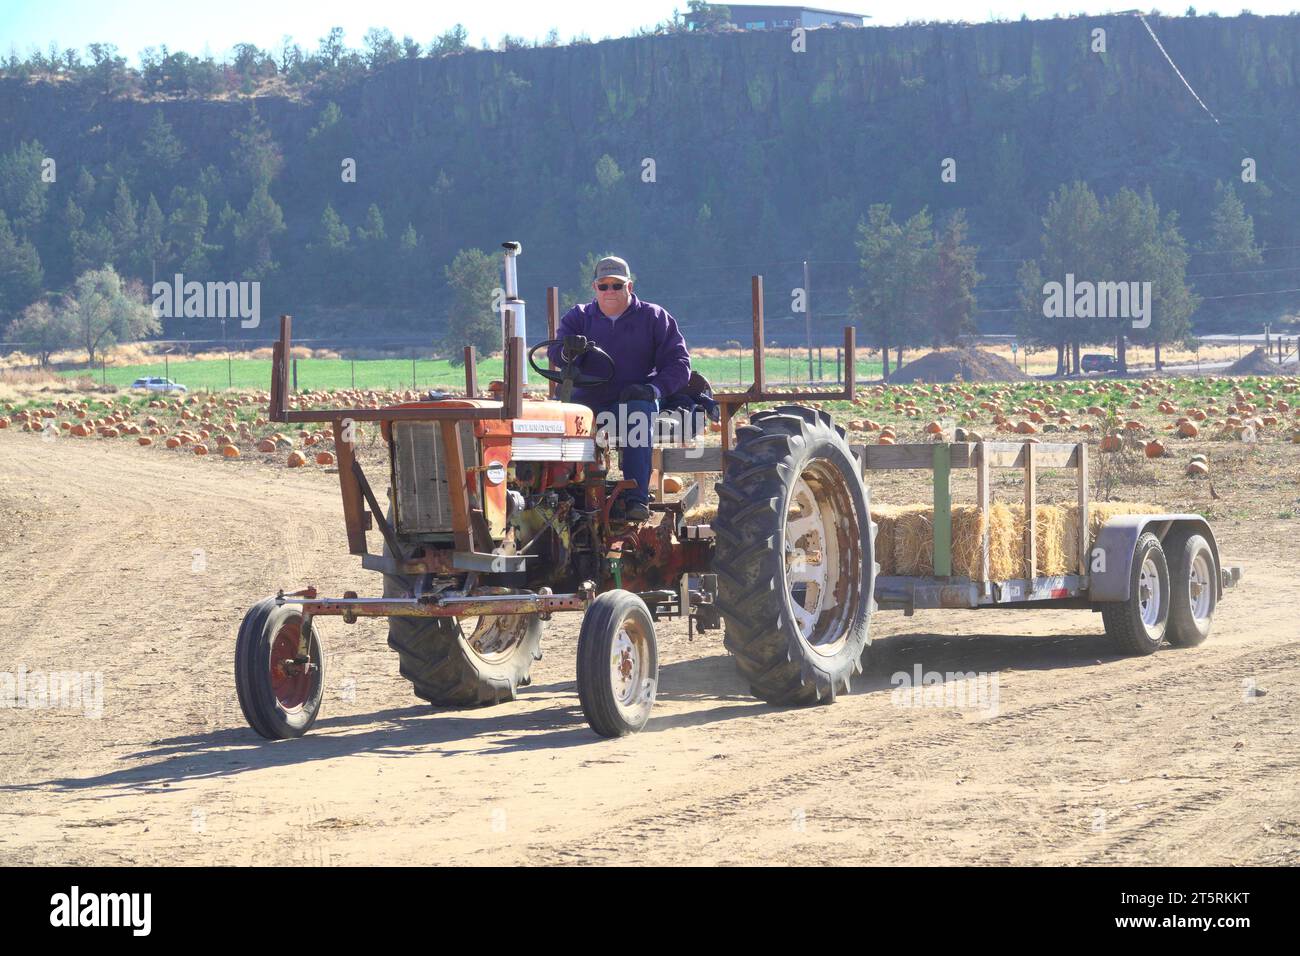 Ein Mann, der Ende oktober auf der Smith Rock Ranch in der Nähe von Terrebonne, Oregon, einen Traktor durch ein Kürbisfeld fuhr. Stockfoto